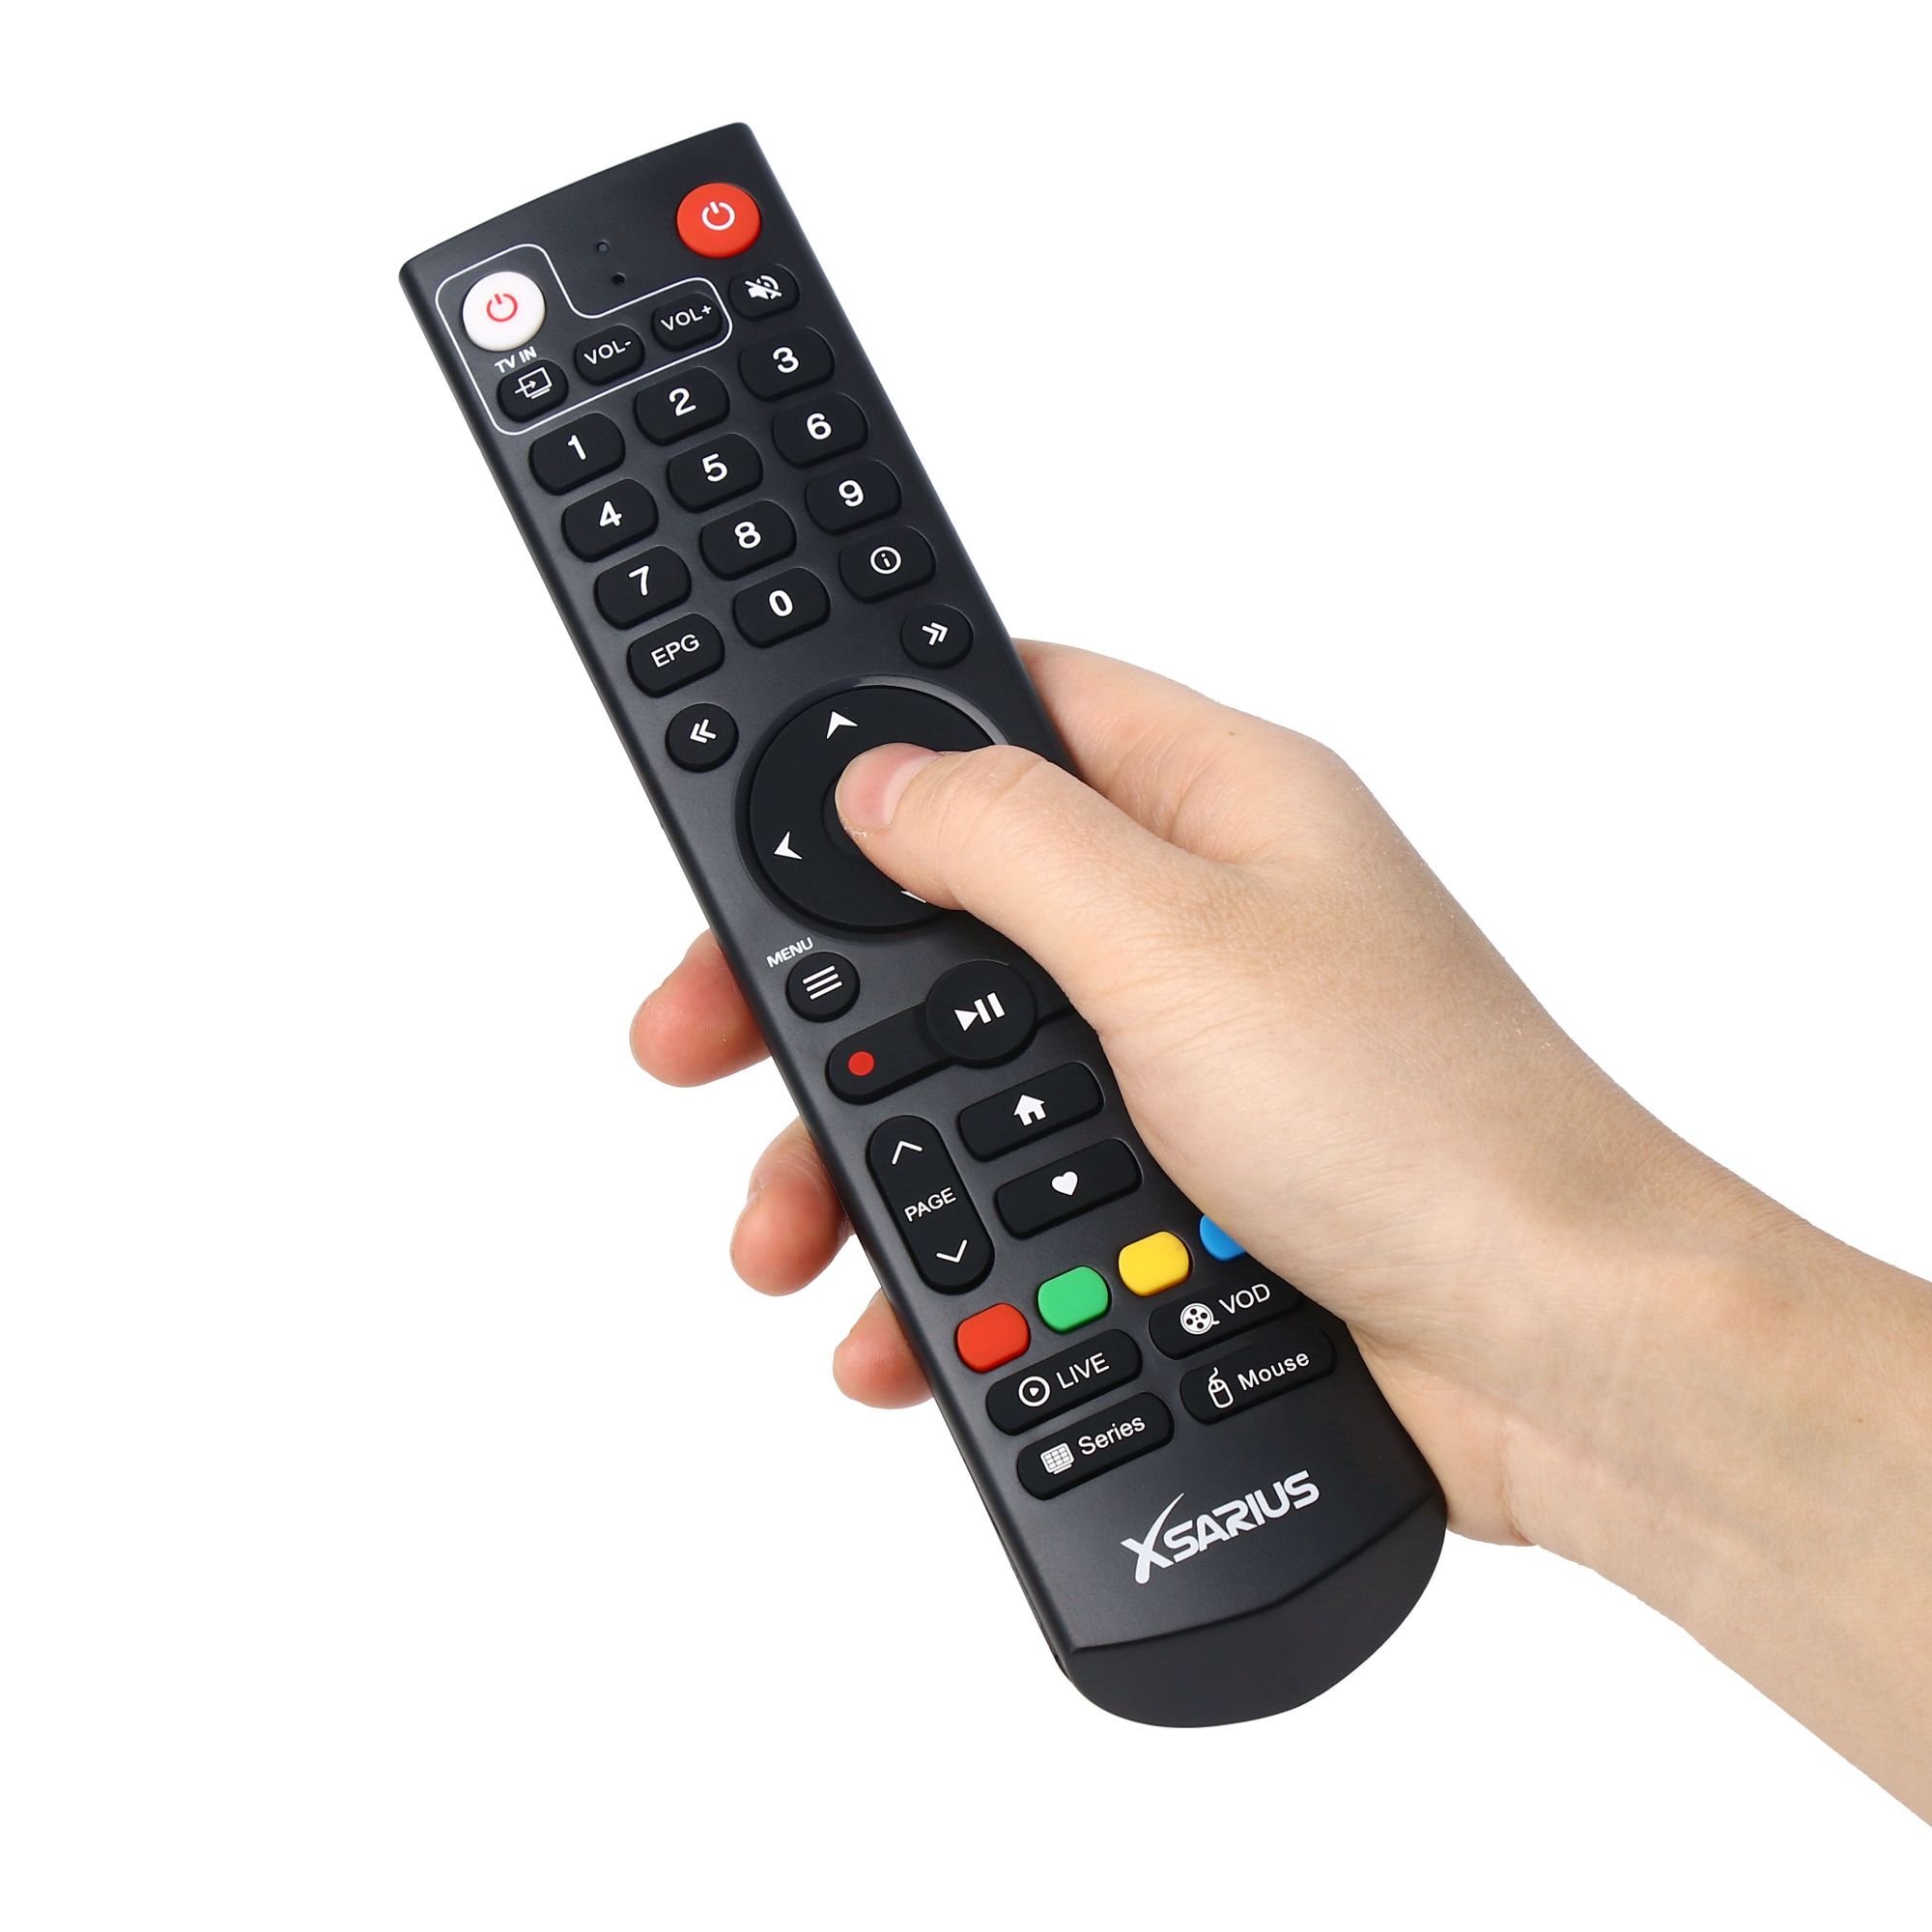 Smart tv ir remote control අභිරුචිකරණය කළ රූපවාහිනී පෙට්ටිය ස්මාර්ට් ටීවී 44 බොත්තම සඳහා හඬ දුරස්ථ පාලකය හෝ යතුරු 48 ble හඬ දුරස්ථ පාලකය විශේෂාංගිත රූපය